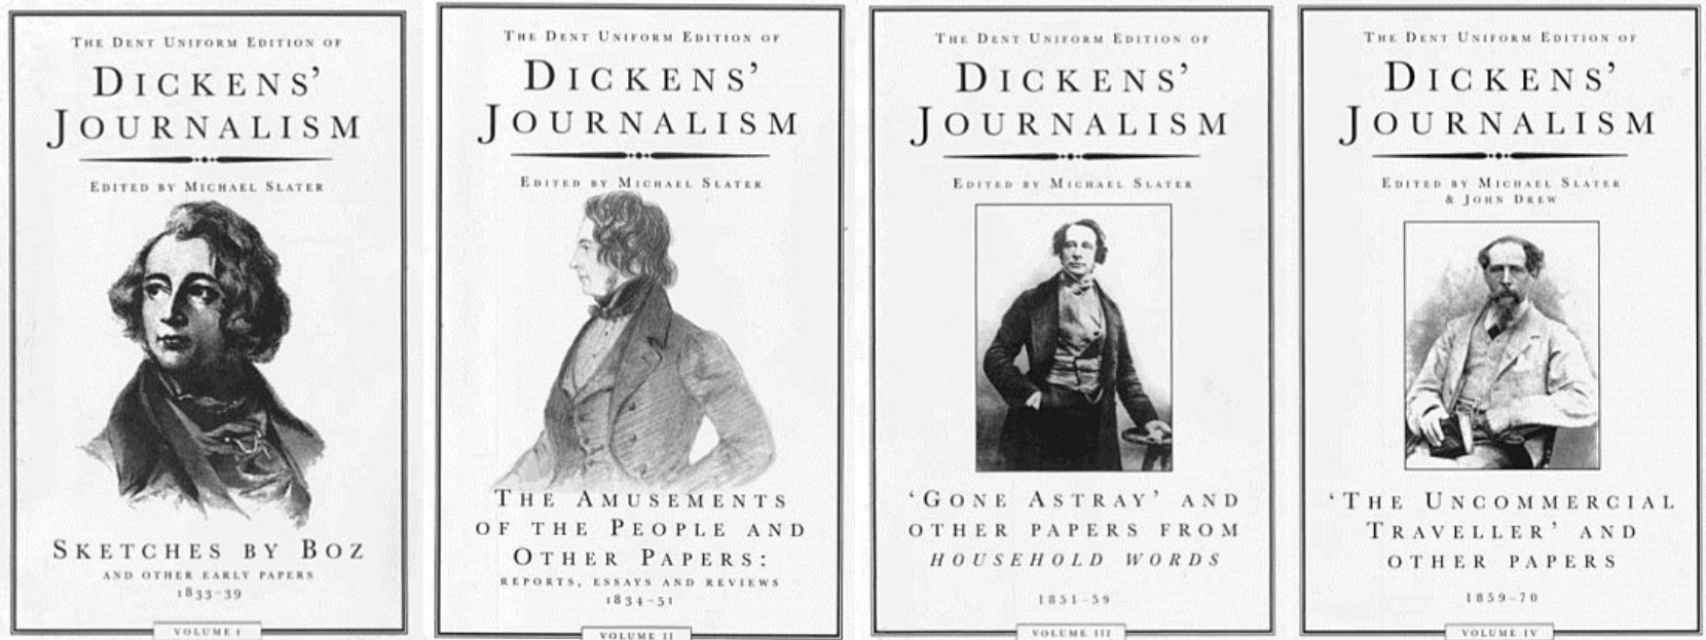 La obra periodística completa de Dickens editada por Michael Slater